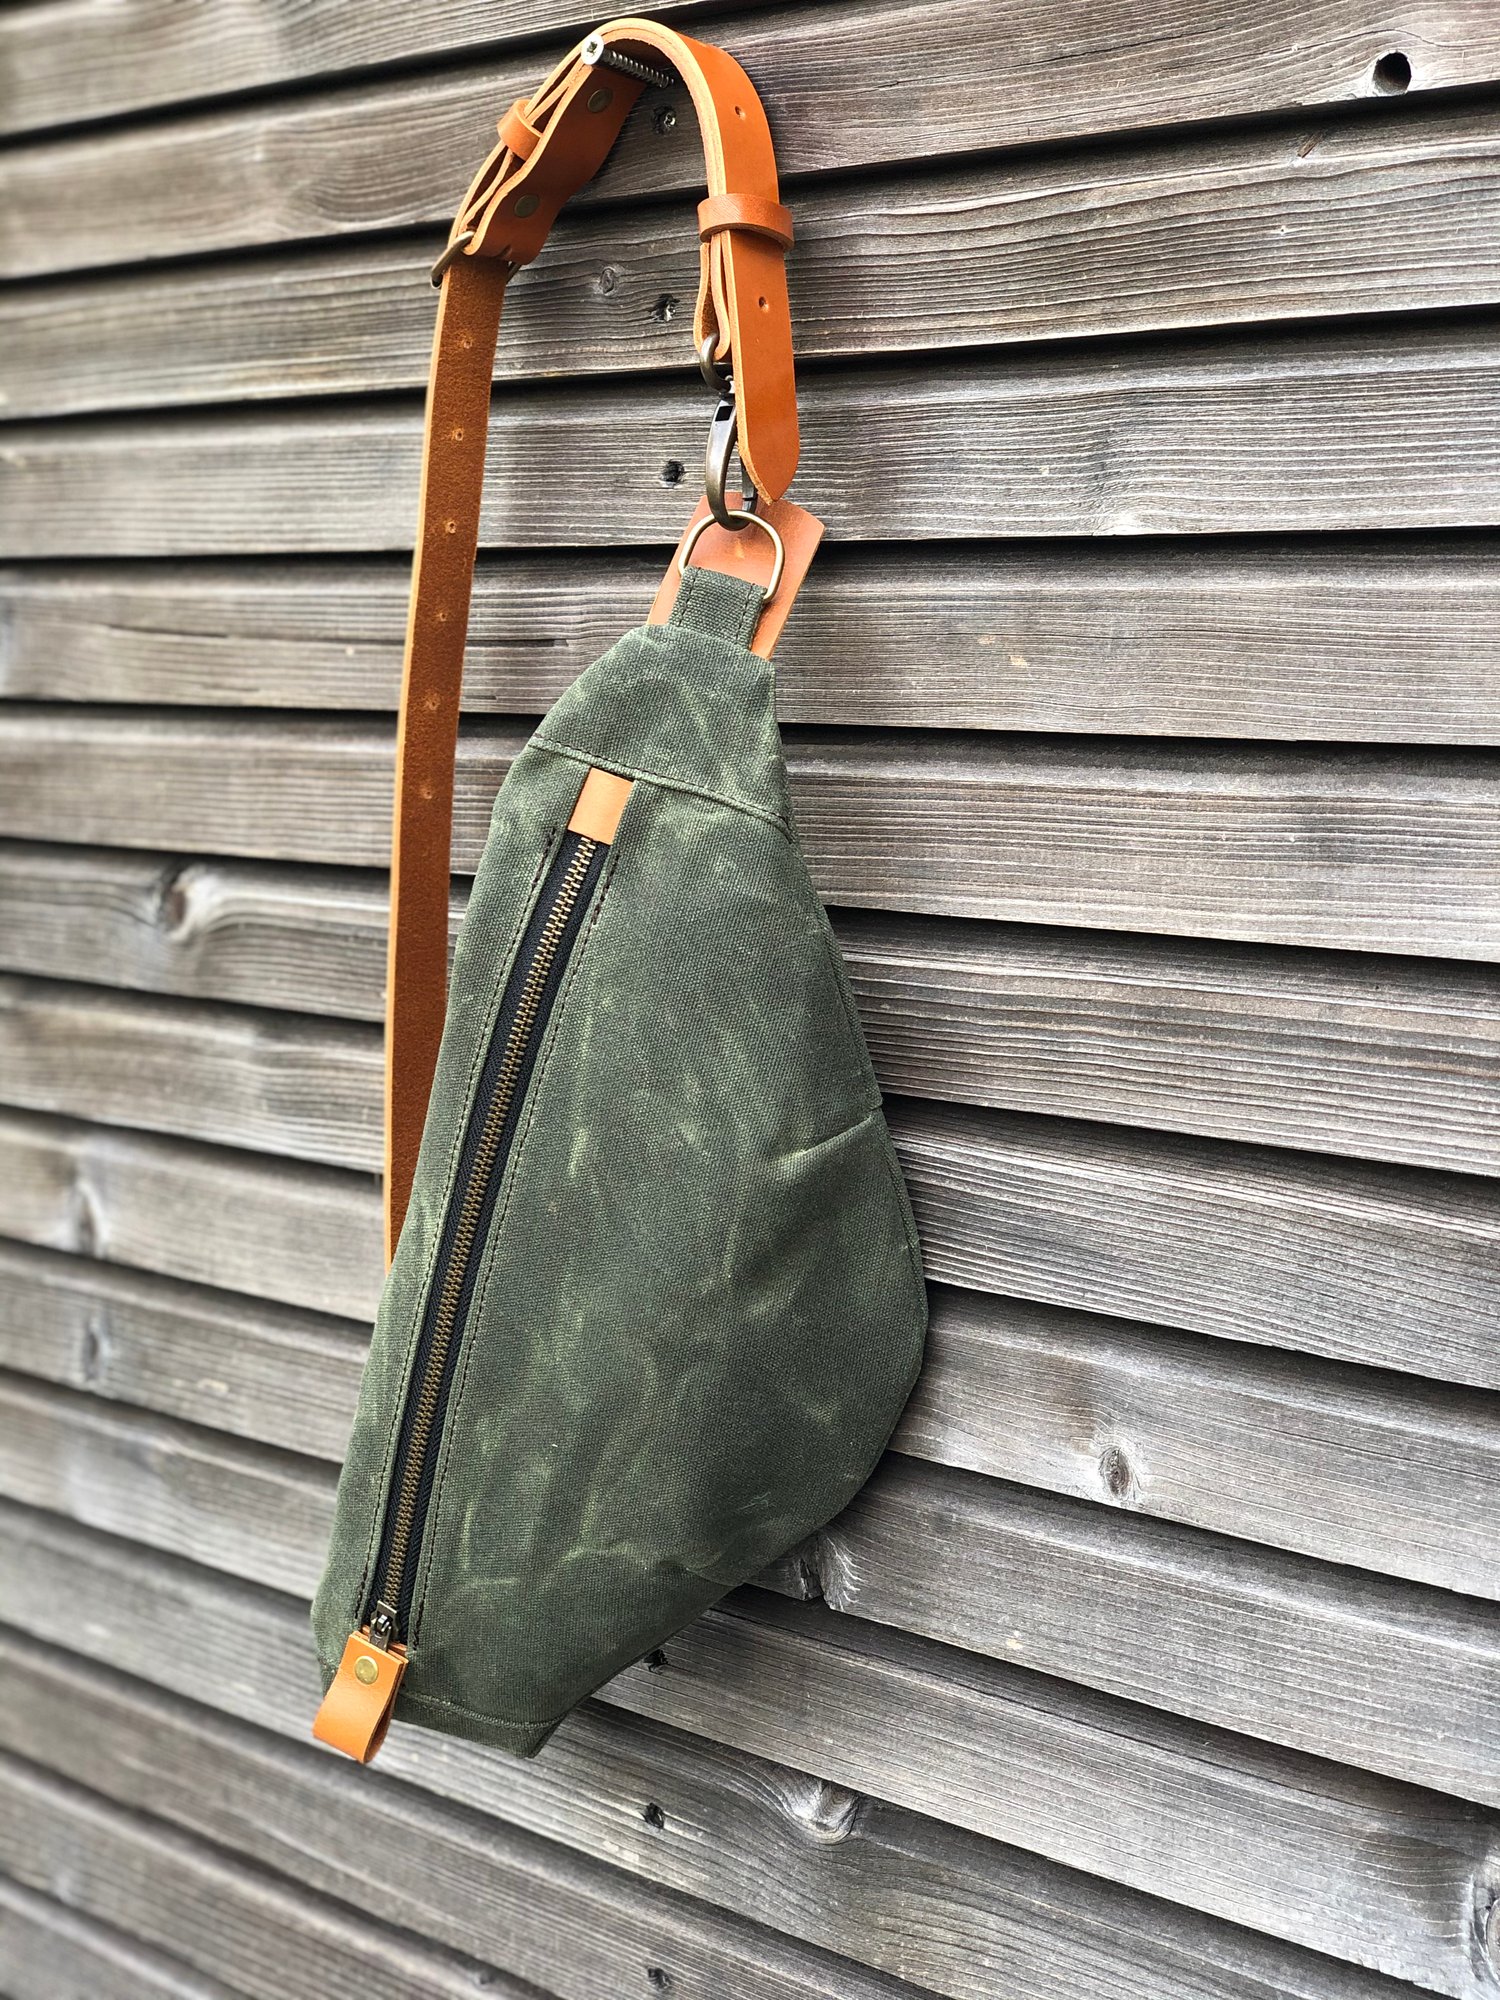 Cool Canvas Leather Mens Sling Bag Chest Bag One Shoulder Pack for